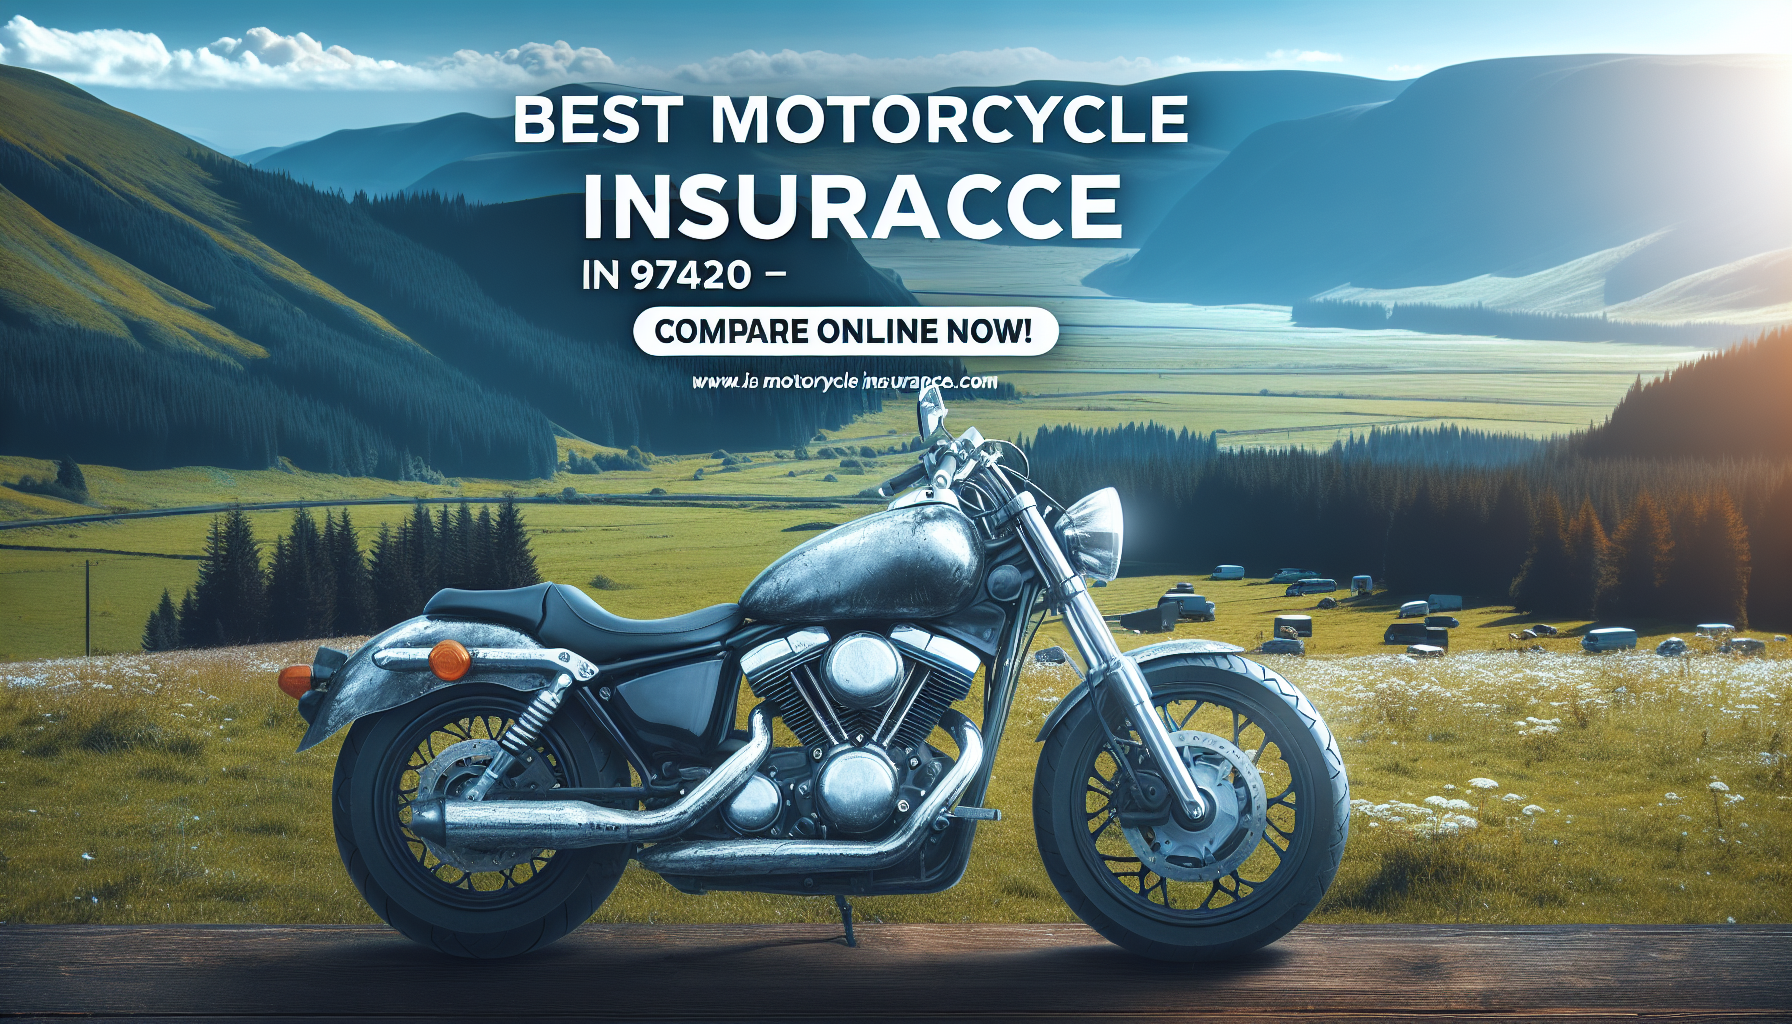 comparez les offres d'assurance moto 97420 en ligne avec notre comparateur pour trouver la meilleure couverture au meilleur prix.